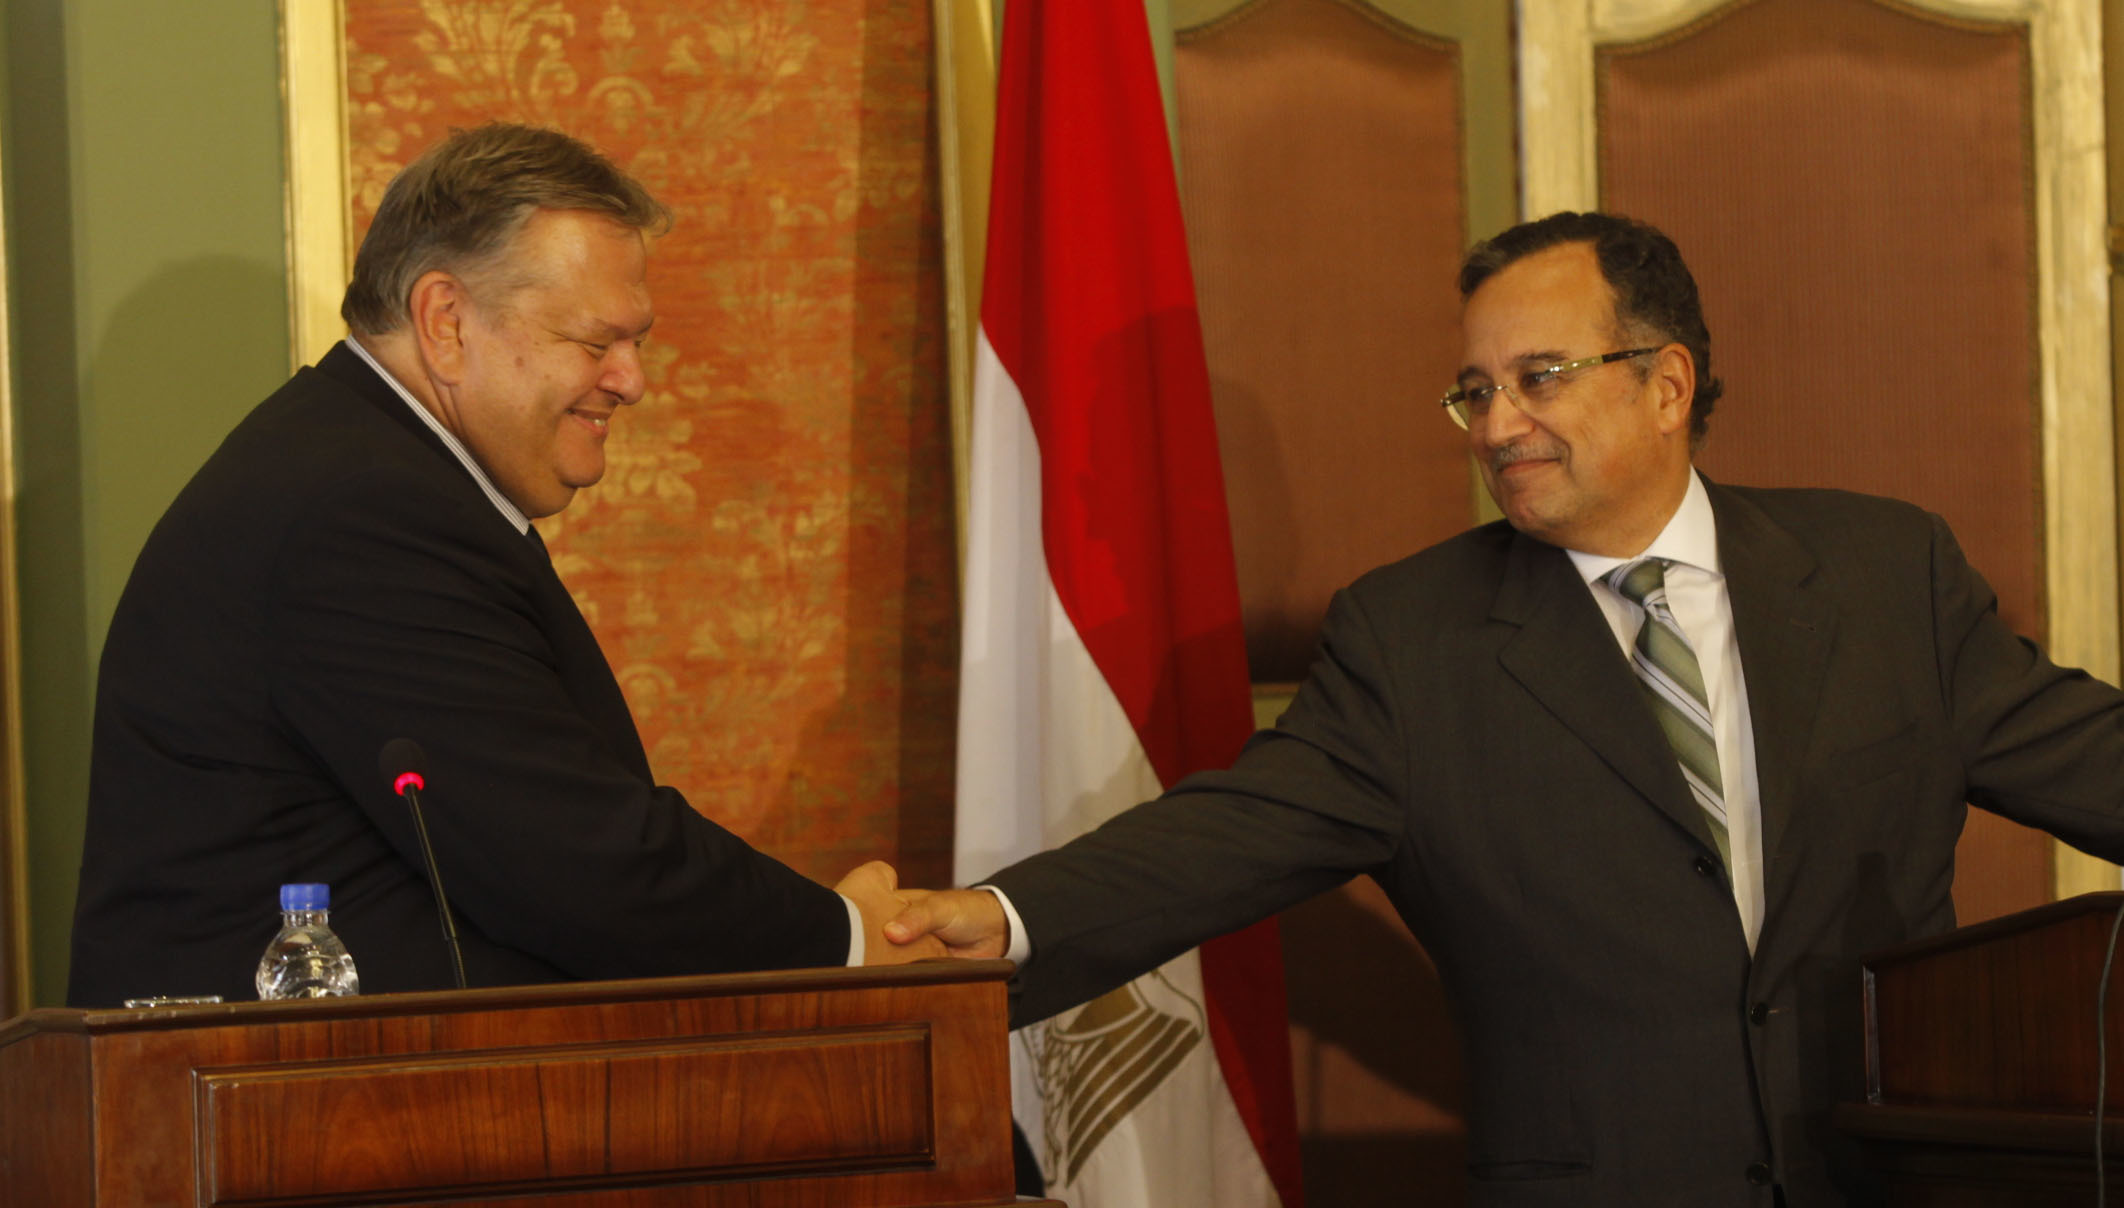 ΦΩΤΟ EUROKINISSI - Eπίσκεψη Ε. Βενιζέλου στην Αίγυπτο - Δηλώσεις με τον ΥΠΕΞ N. Αbil Fahmy